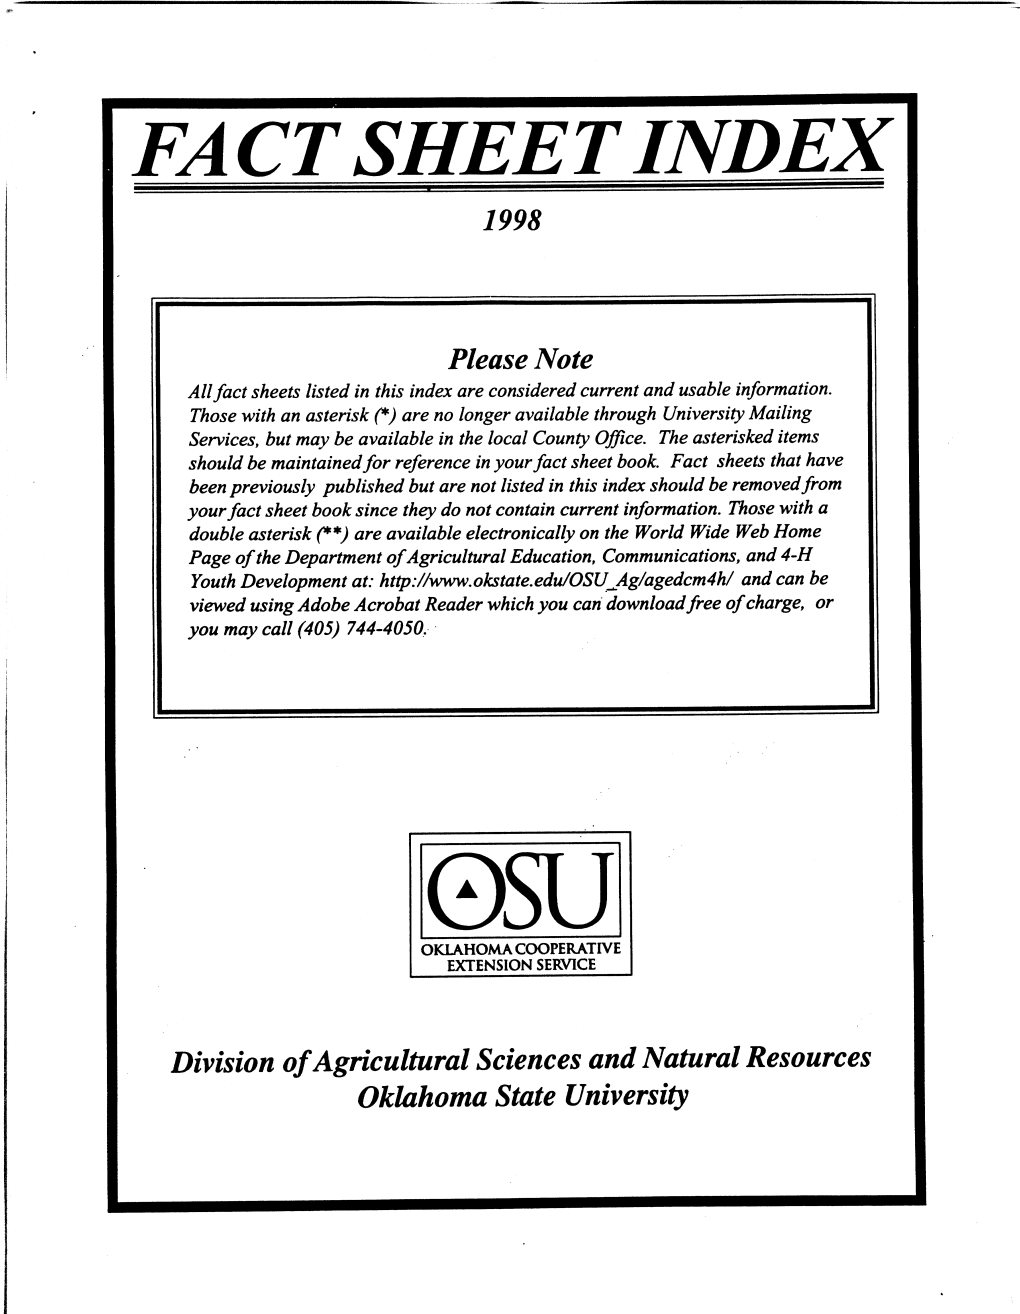 Fact Sheet Index 1998